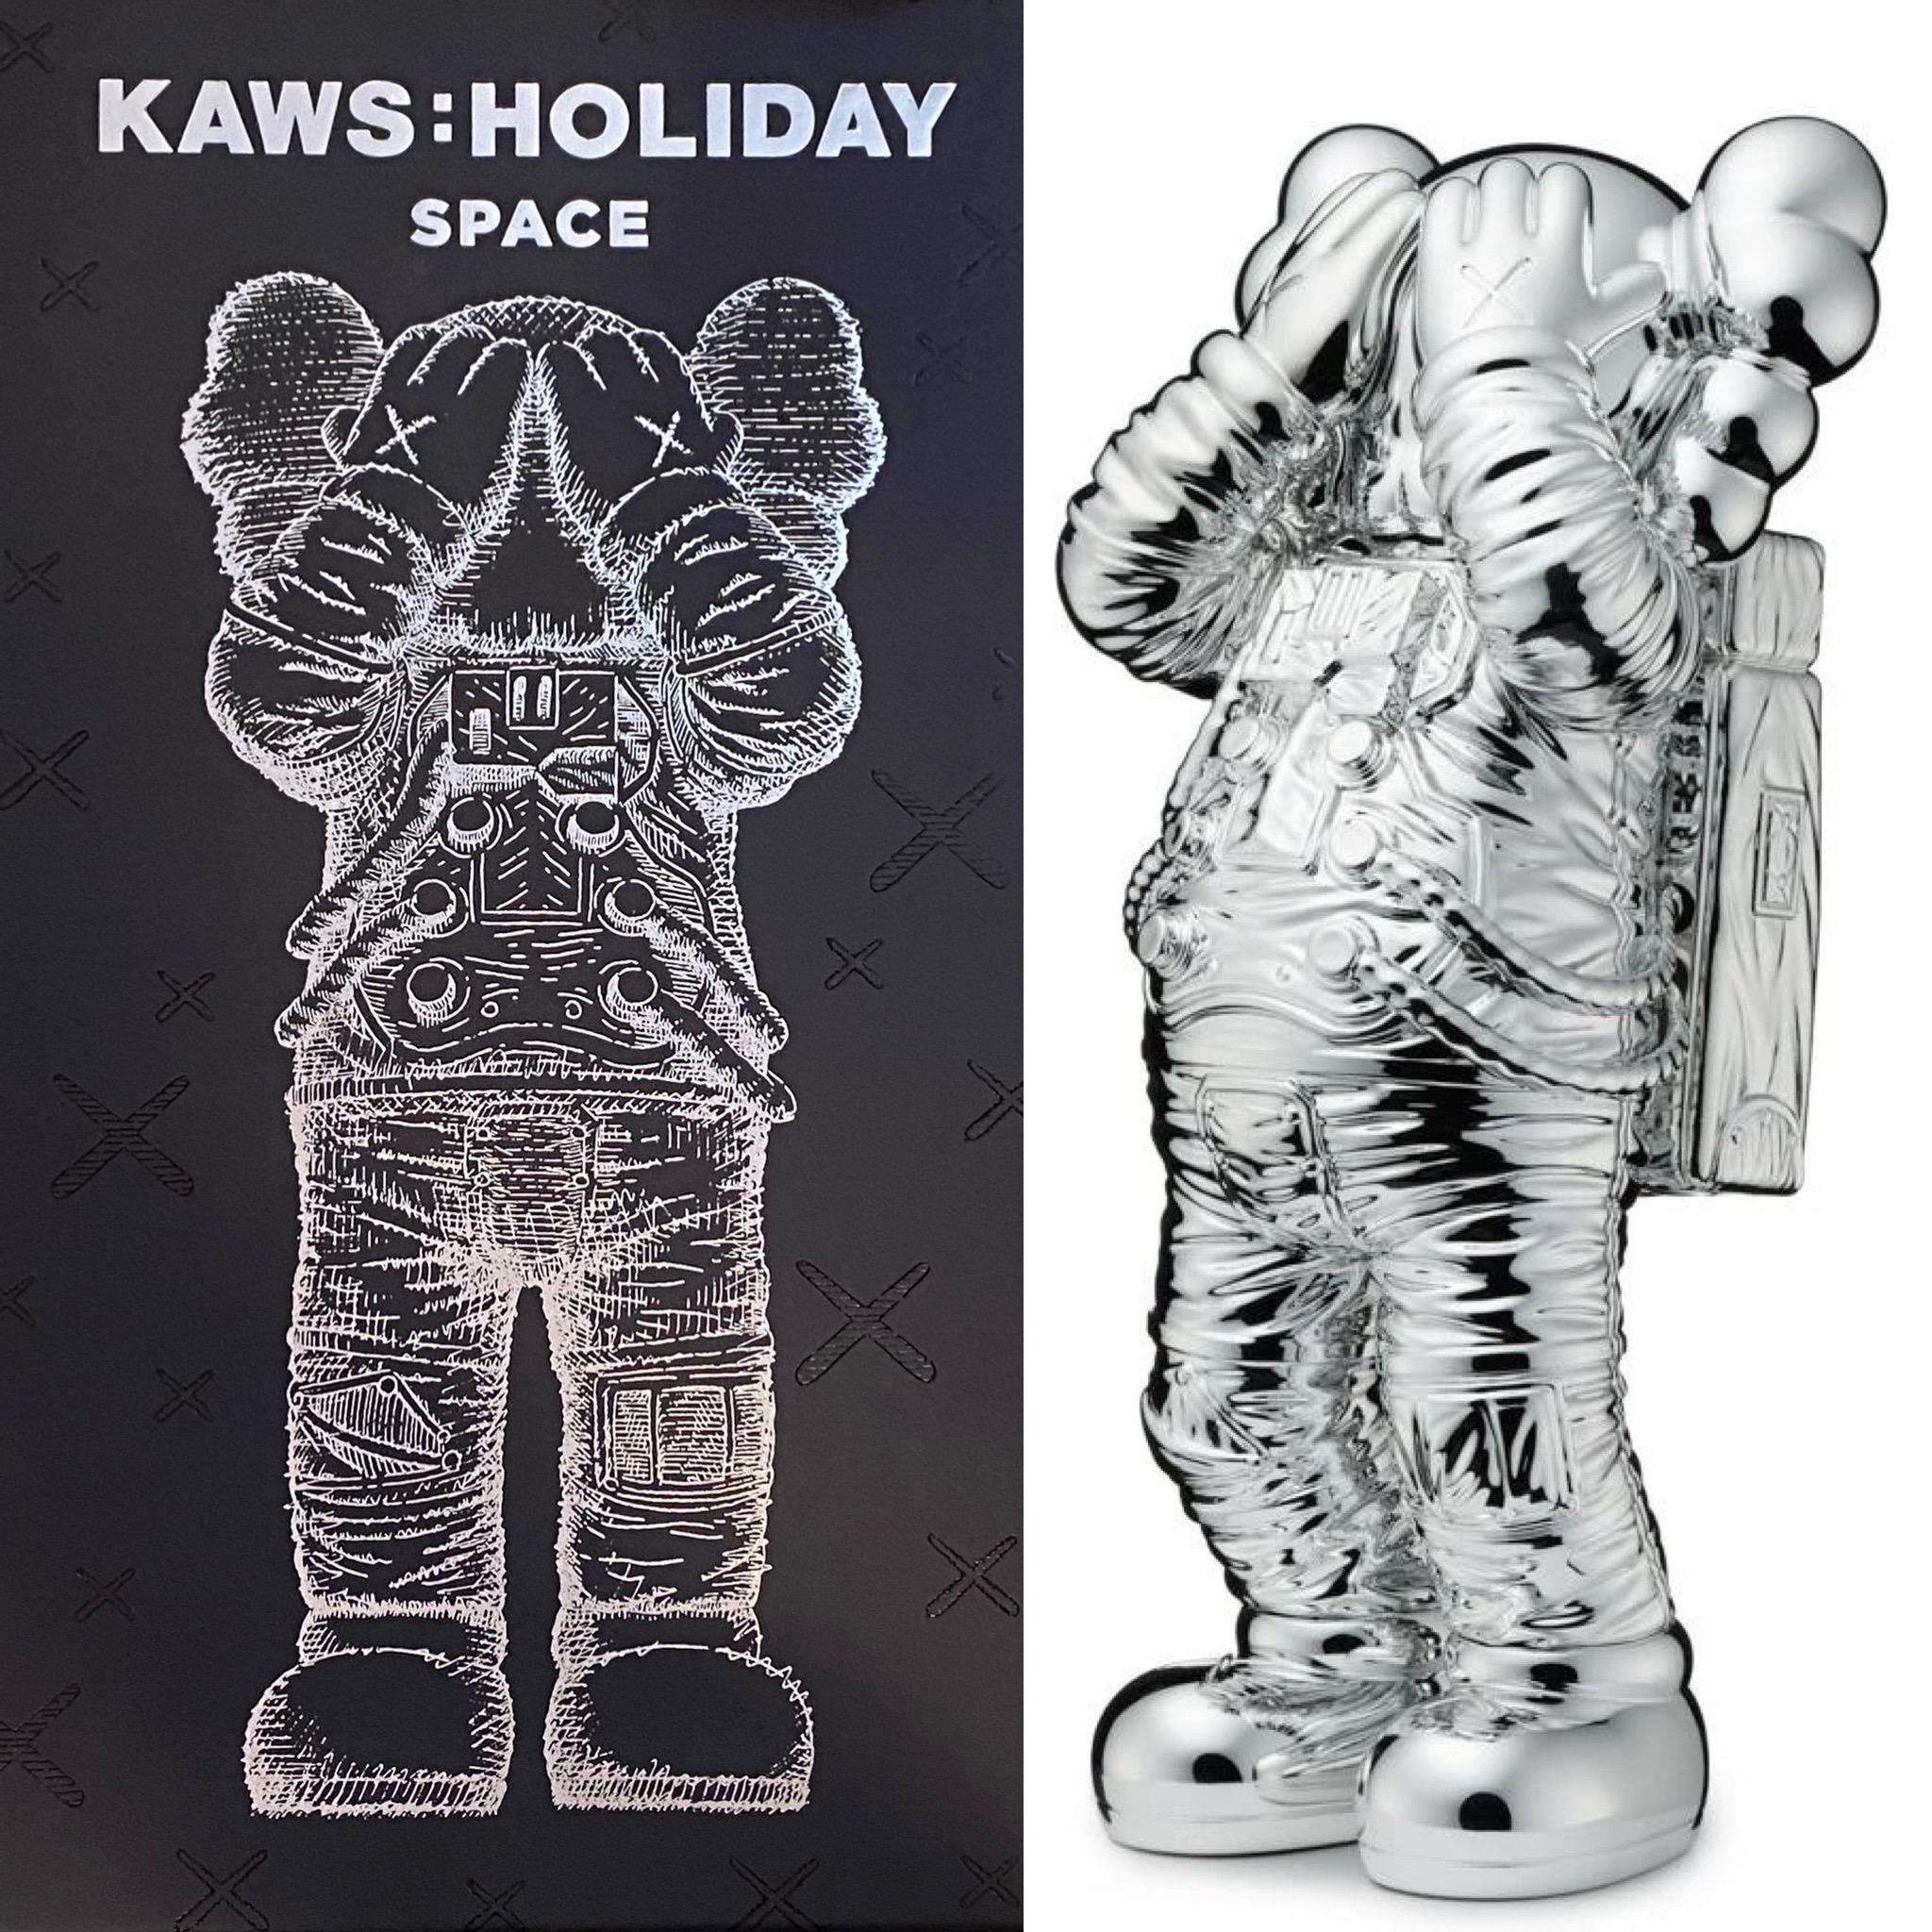 KAWS - KAWS Holiday SPACE Companion (KAWS silver holiday space) at 